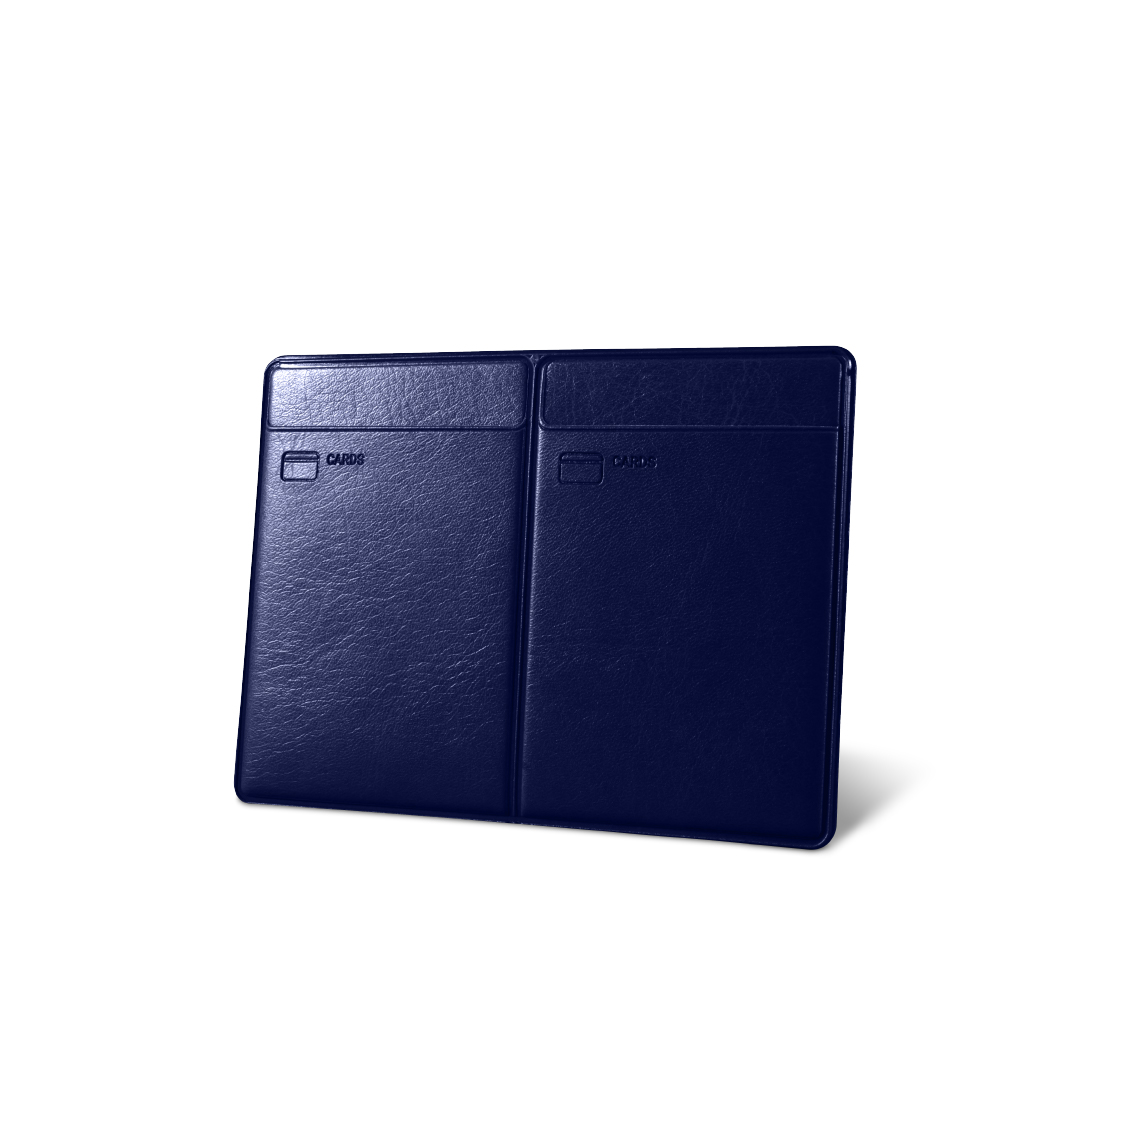 Обложка для автодокументов KOD-02 синяя Flexpocket. Цвет: синий